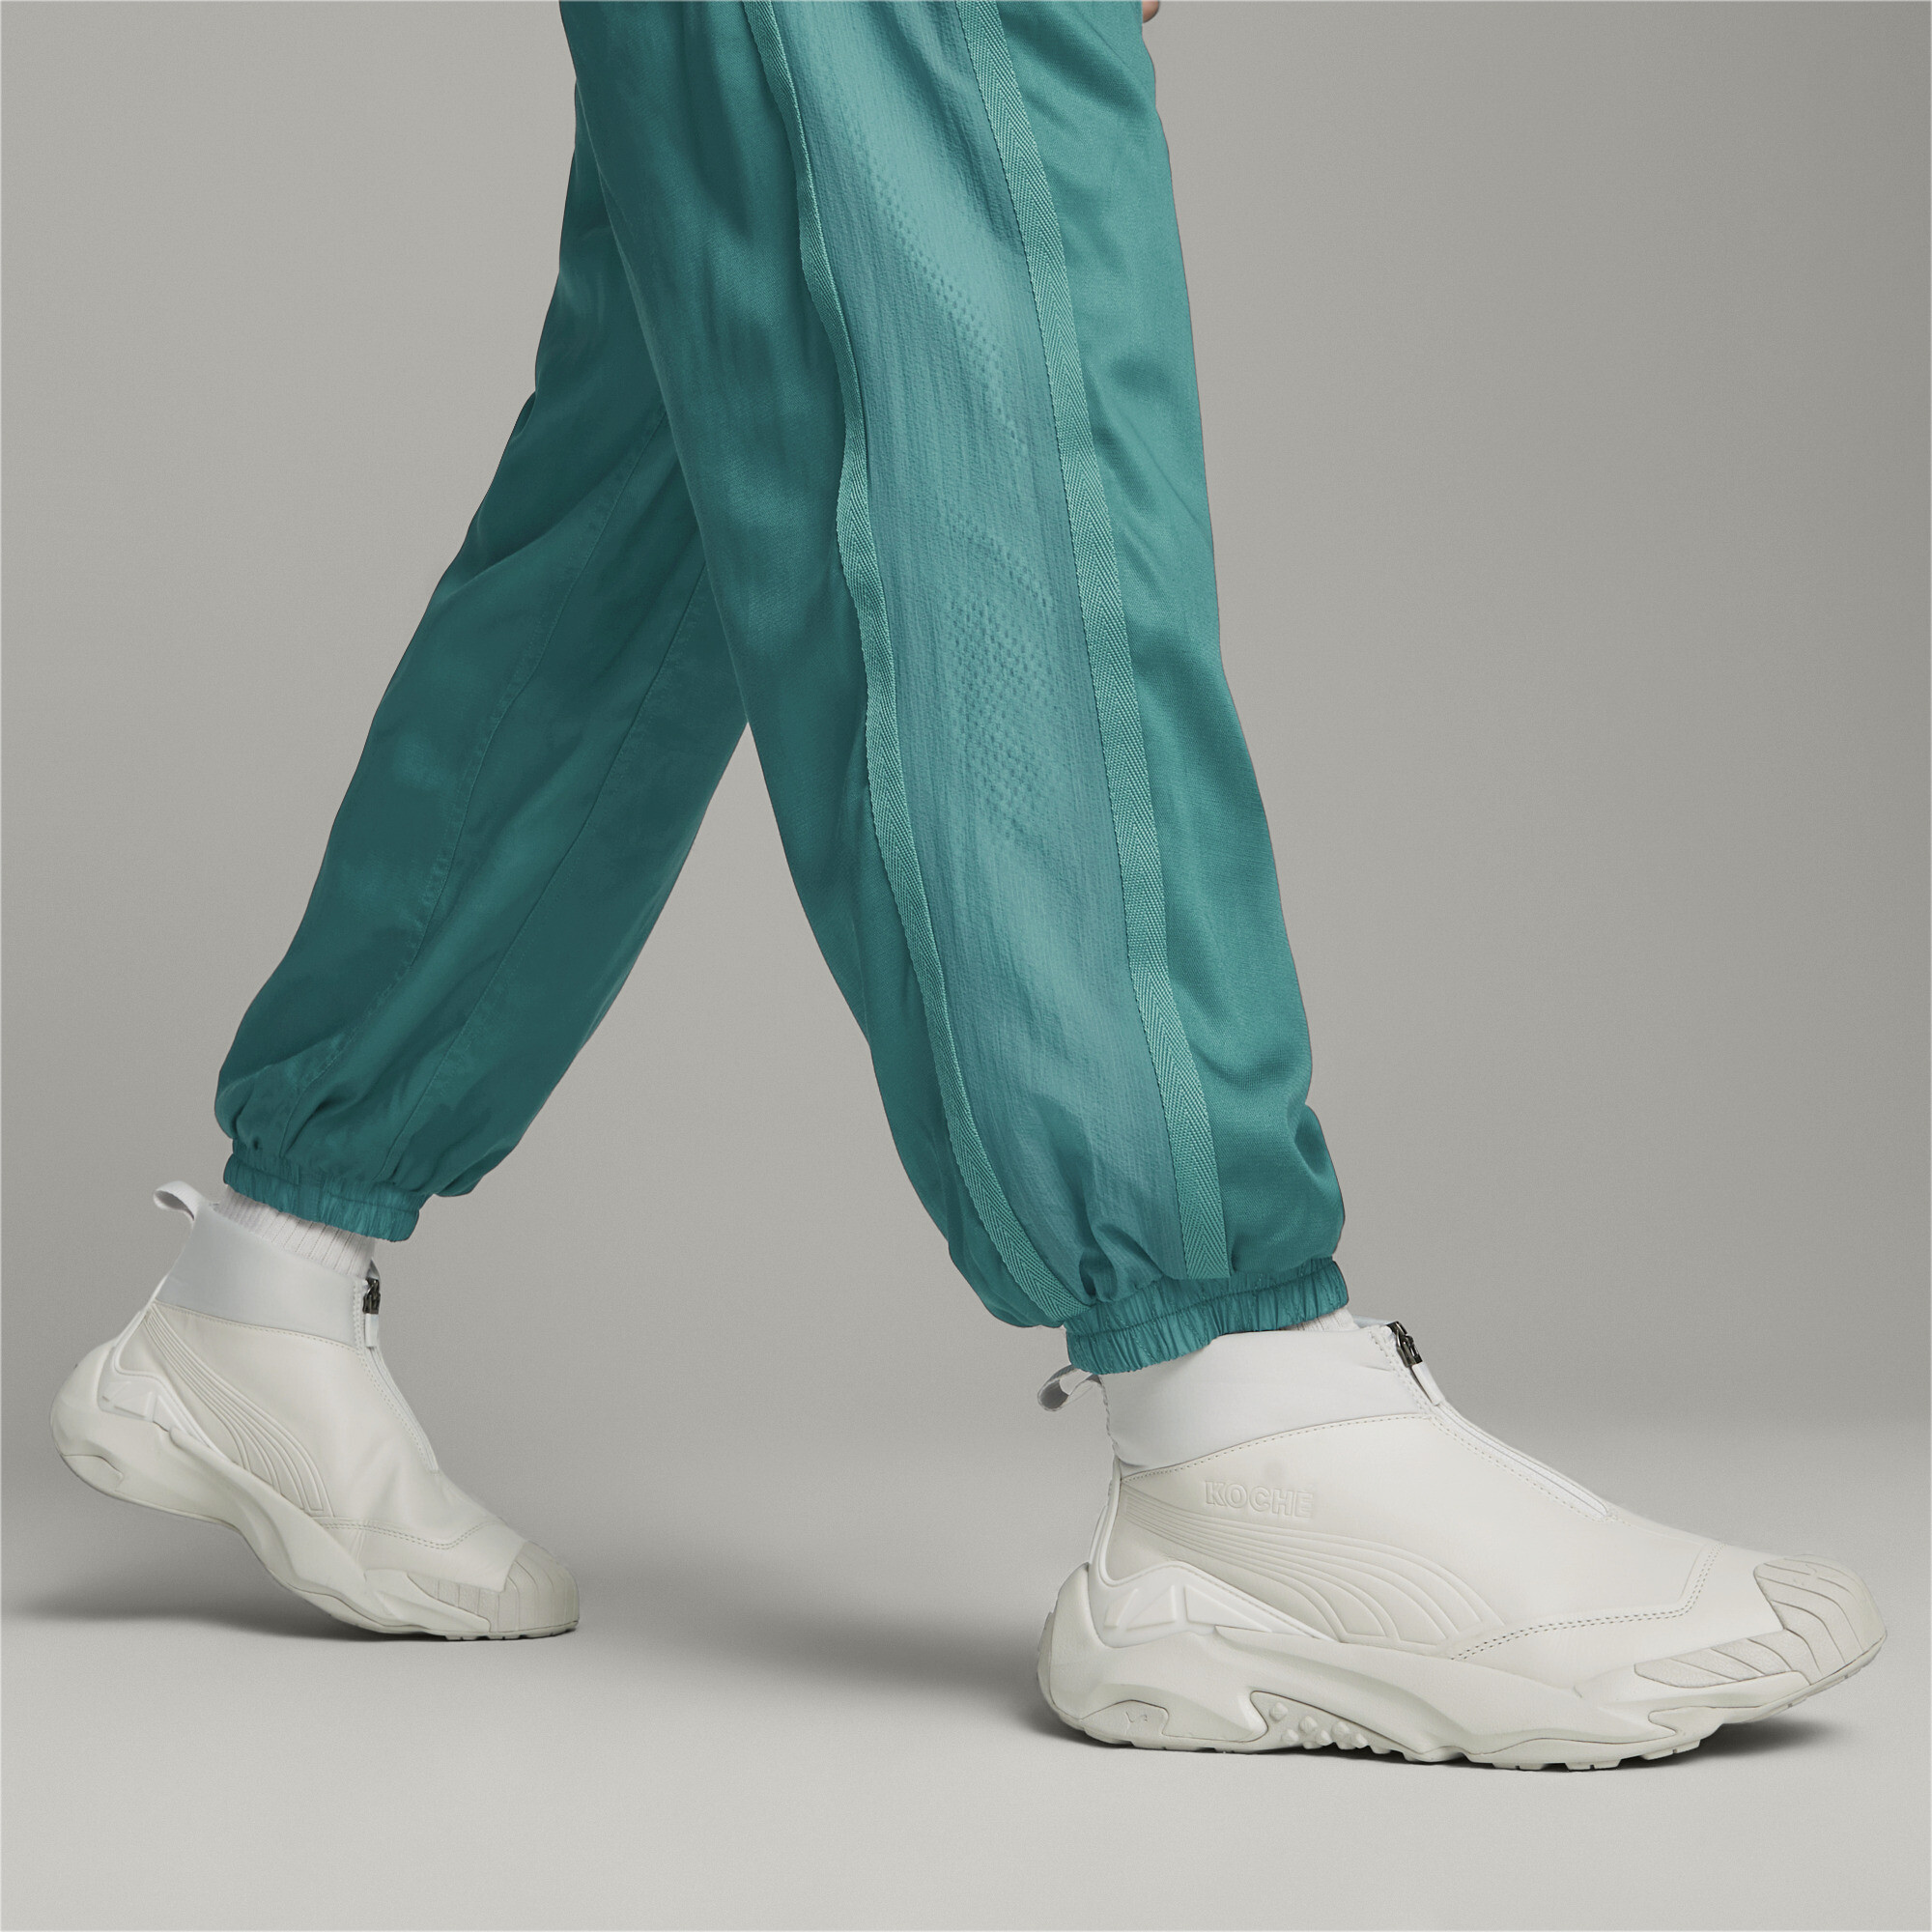 Men's PUMA X KOCHÃ Mid Plexus Sneakers In Gray, Size EU 38